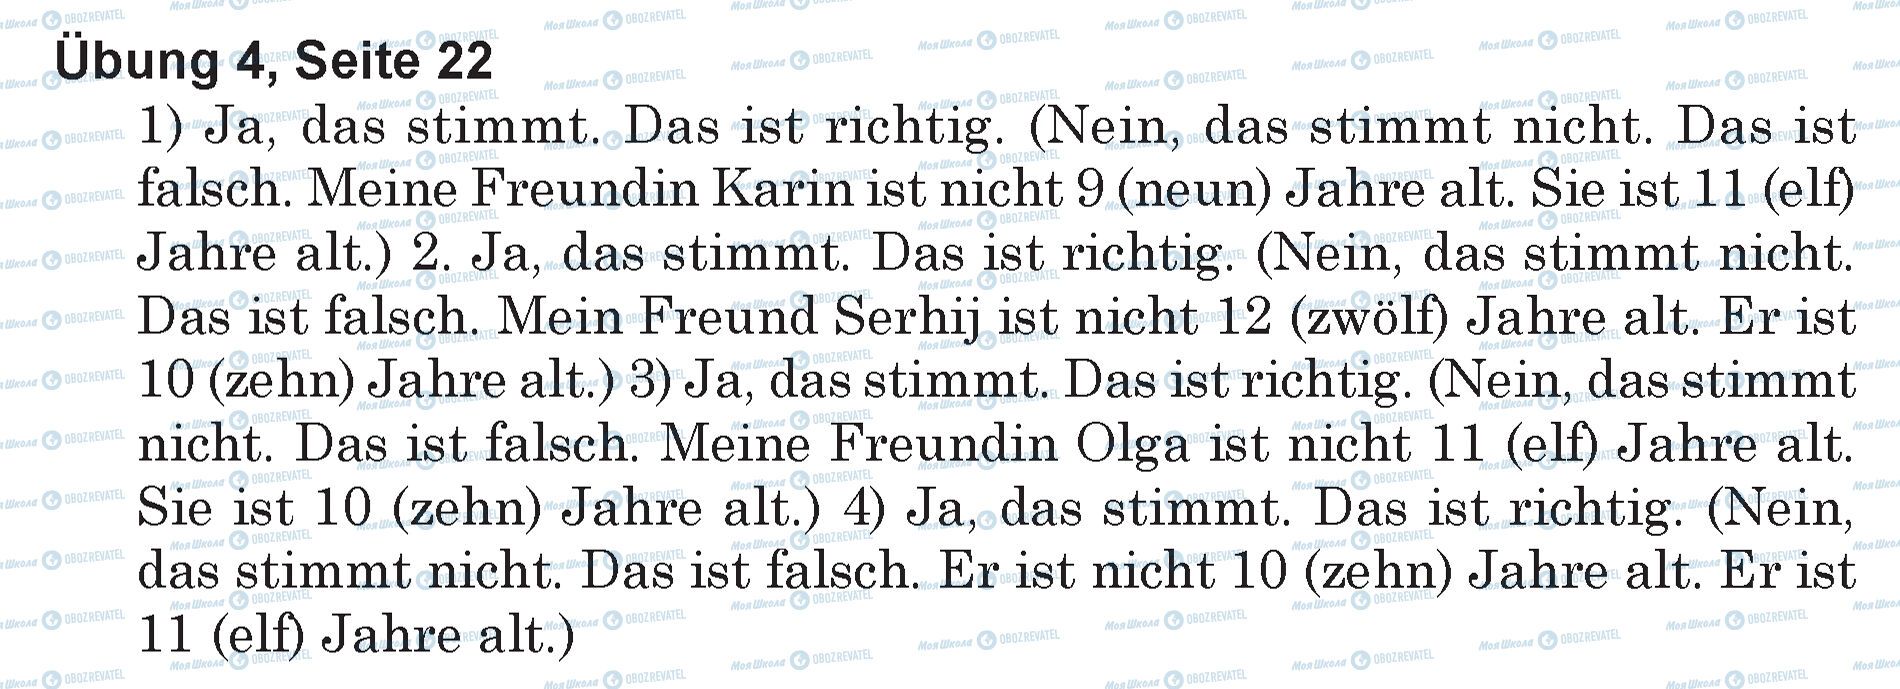 ГДЗ Немецкий язык 5 класс страница Ubung 4, Seite 22